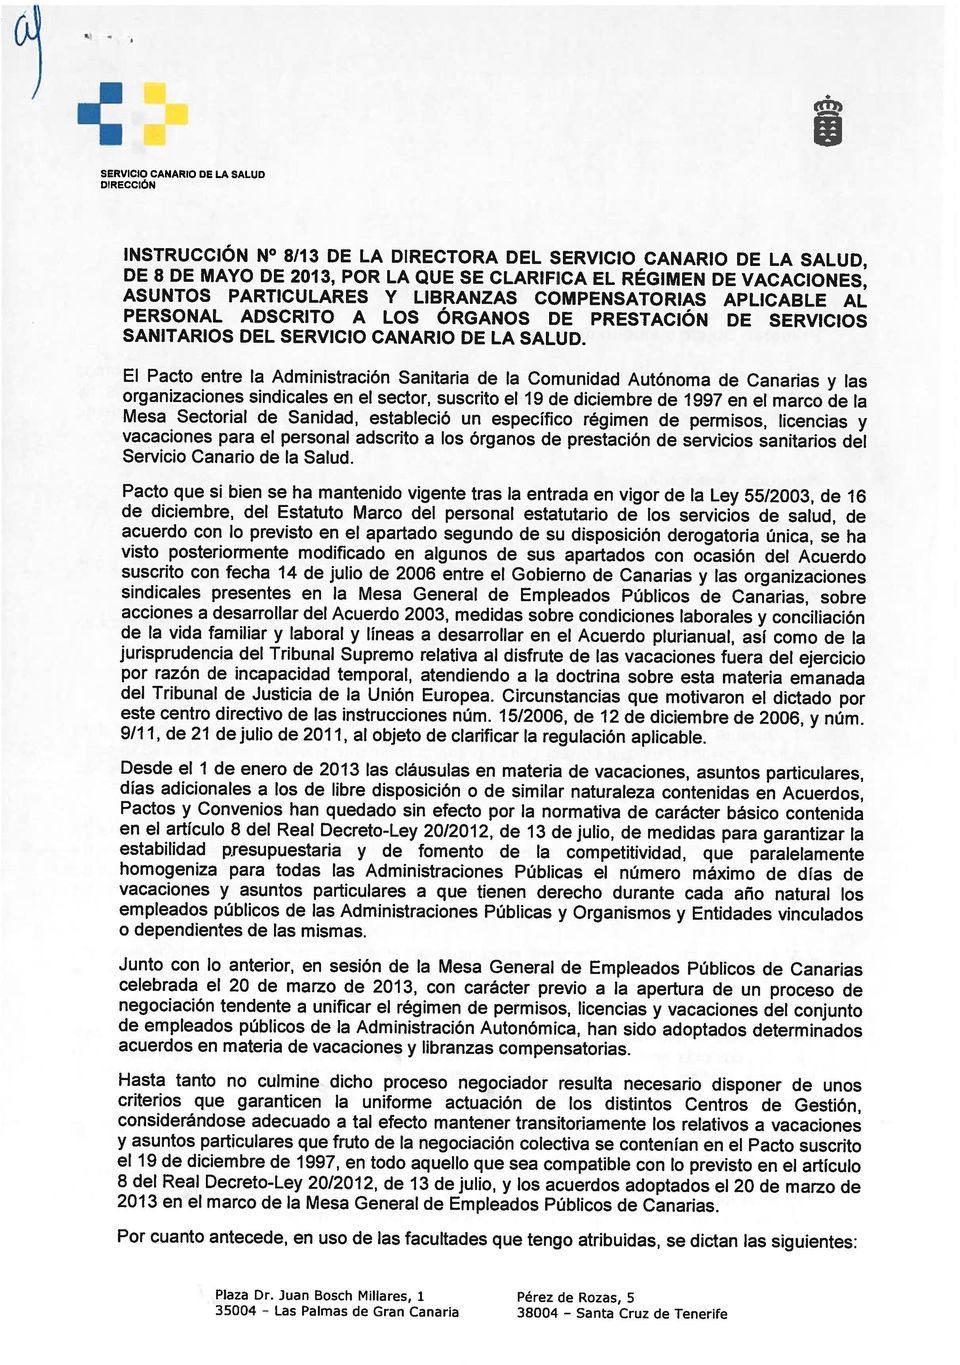 El Pacto entre la Administración Sanitaria de la Comunidad Autónoma de Canarias y las organizaciones sindicales en el sector, suscrito el19 de diciembre de 1997 en el marco de la Mesa Sectorial de